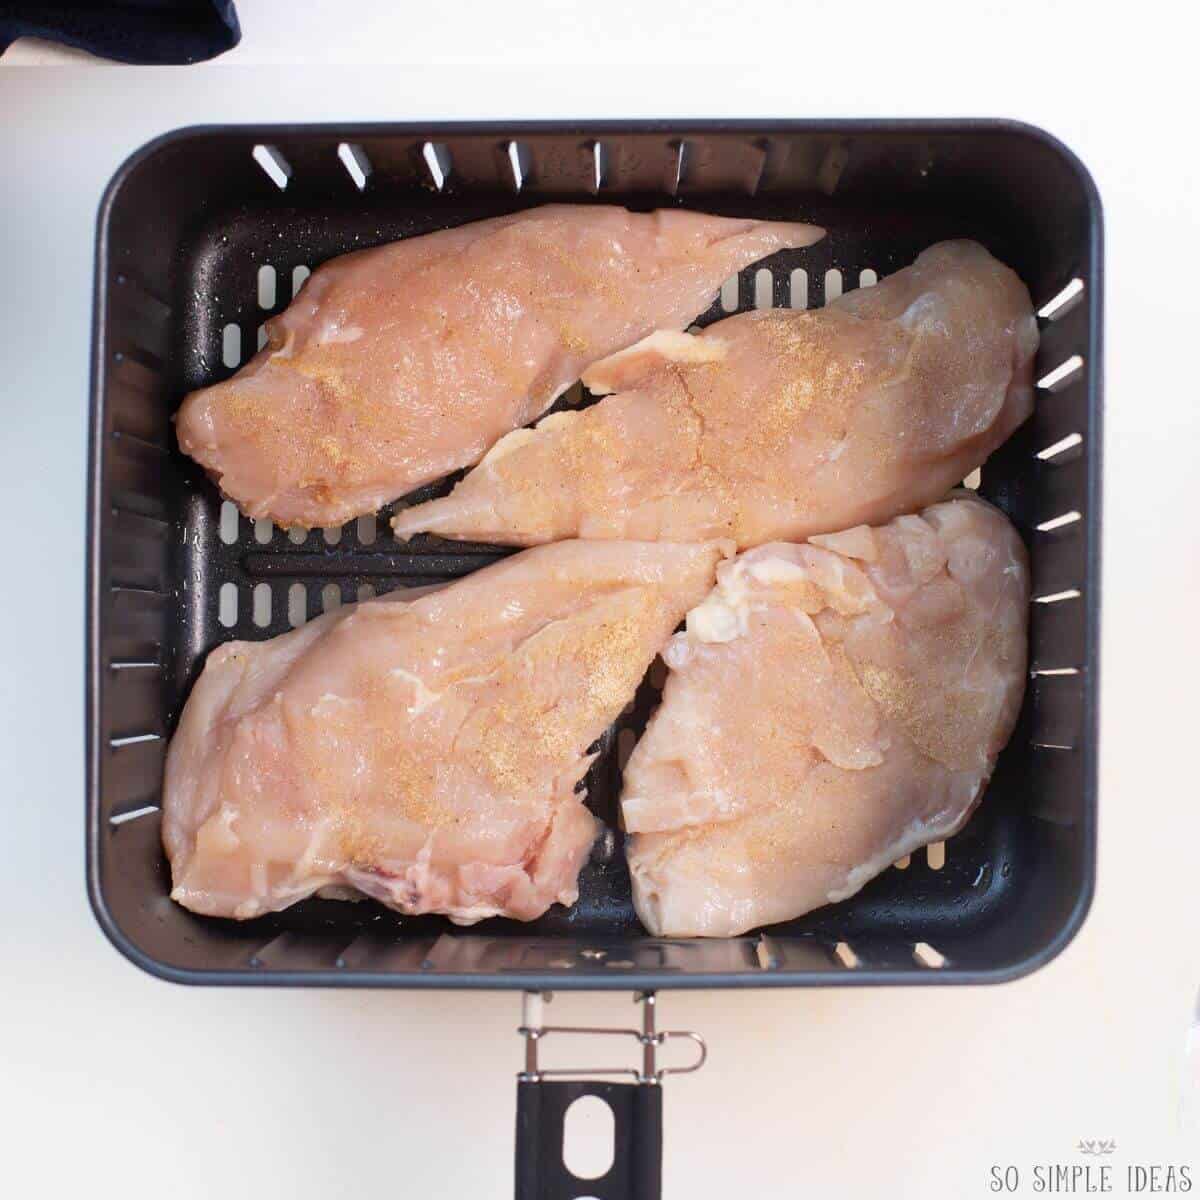 seasoned chicken breasts in air fryer basket.